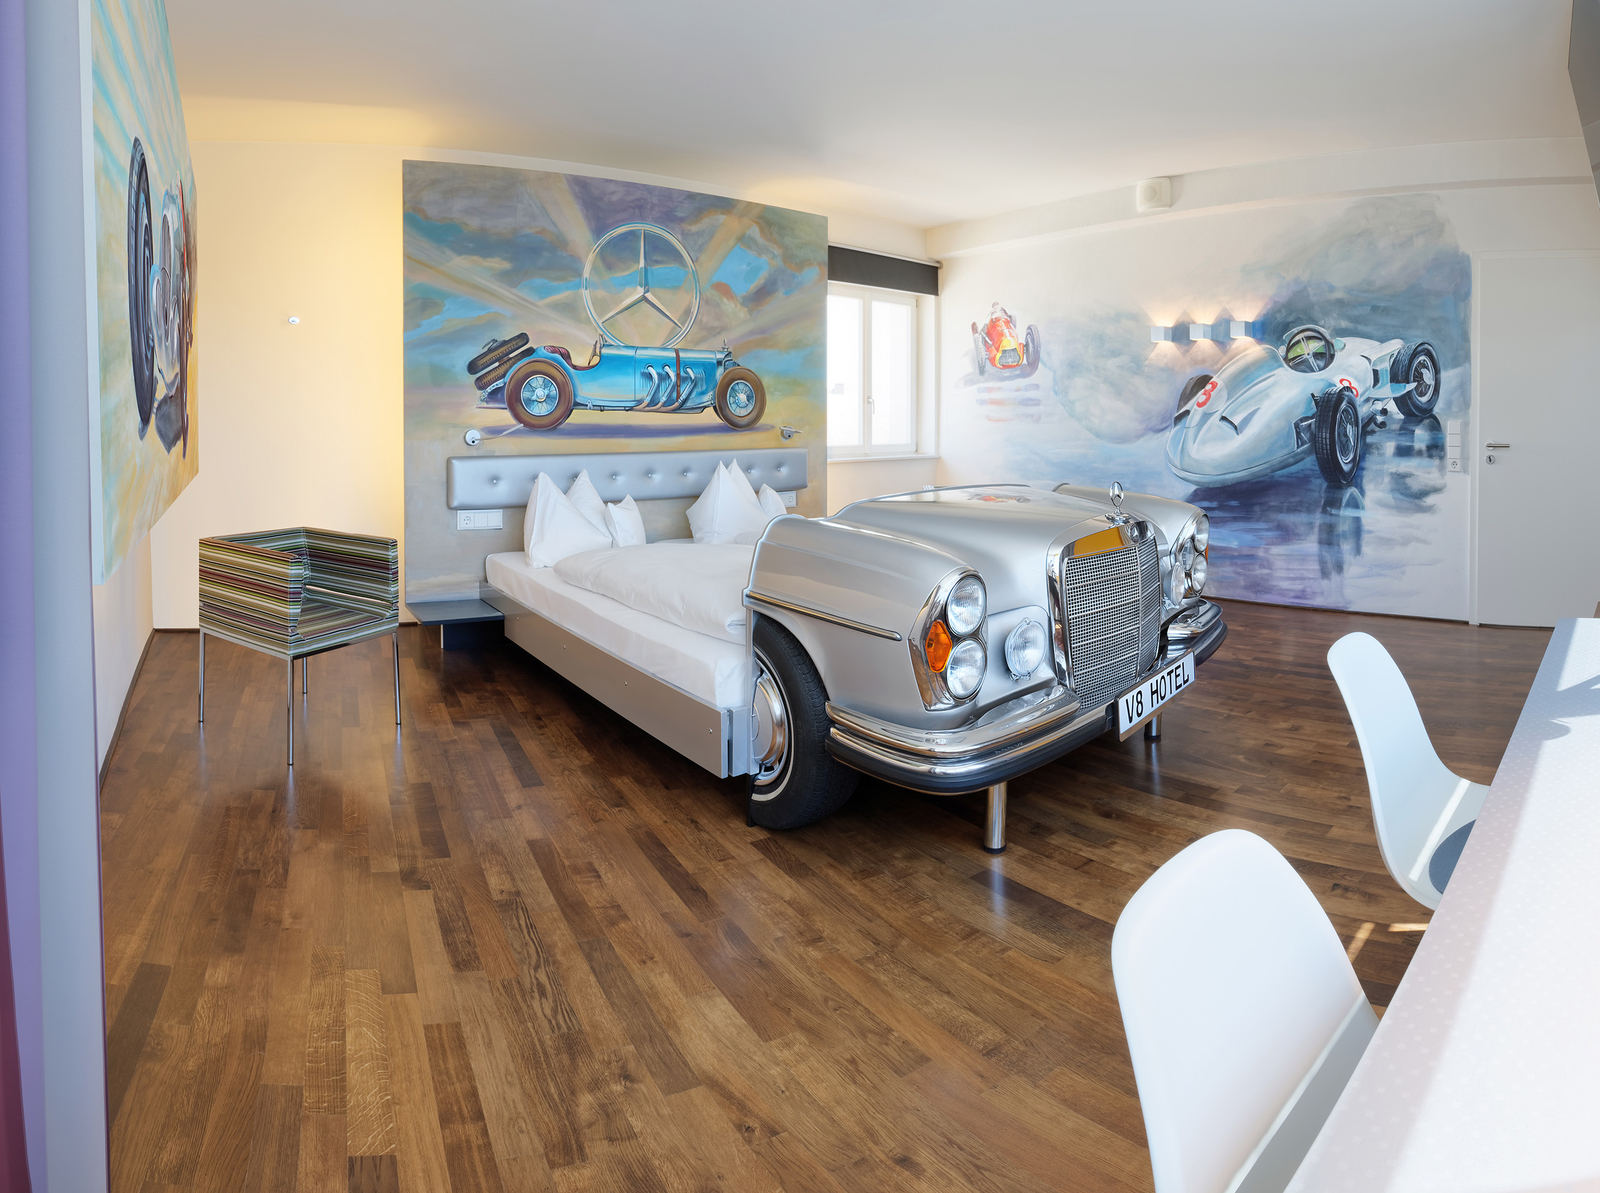 Graues Mercedes-Bett an einer bemalten Wand, die einen Oldtimer von Mercedes zeigt eggenüber eines Schreibtischs mit zwei weißen Stühlen